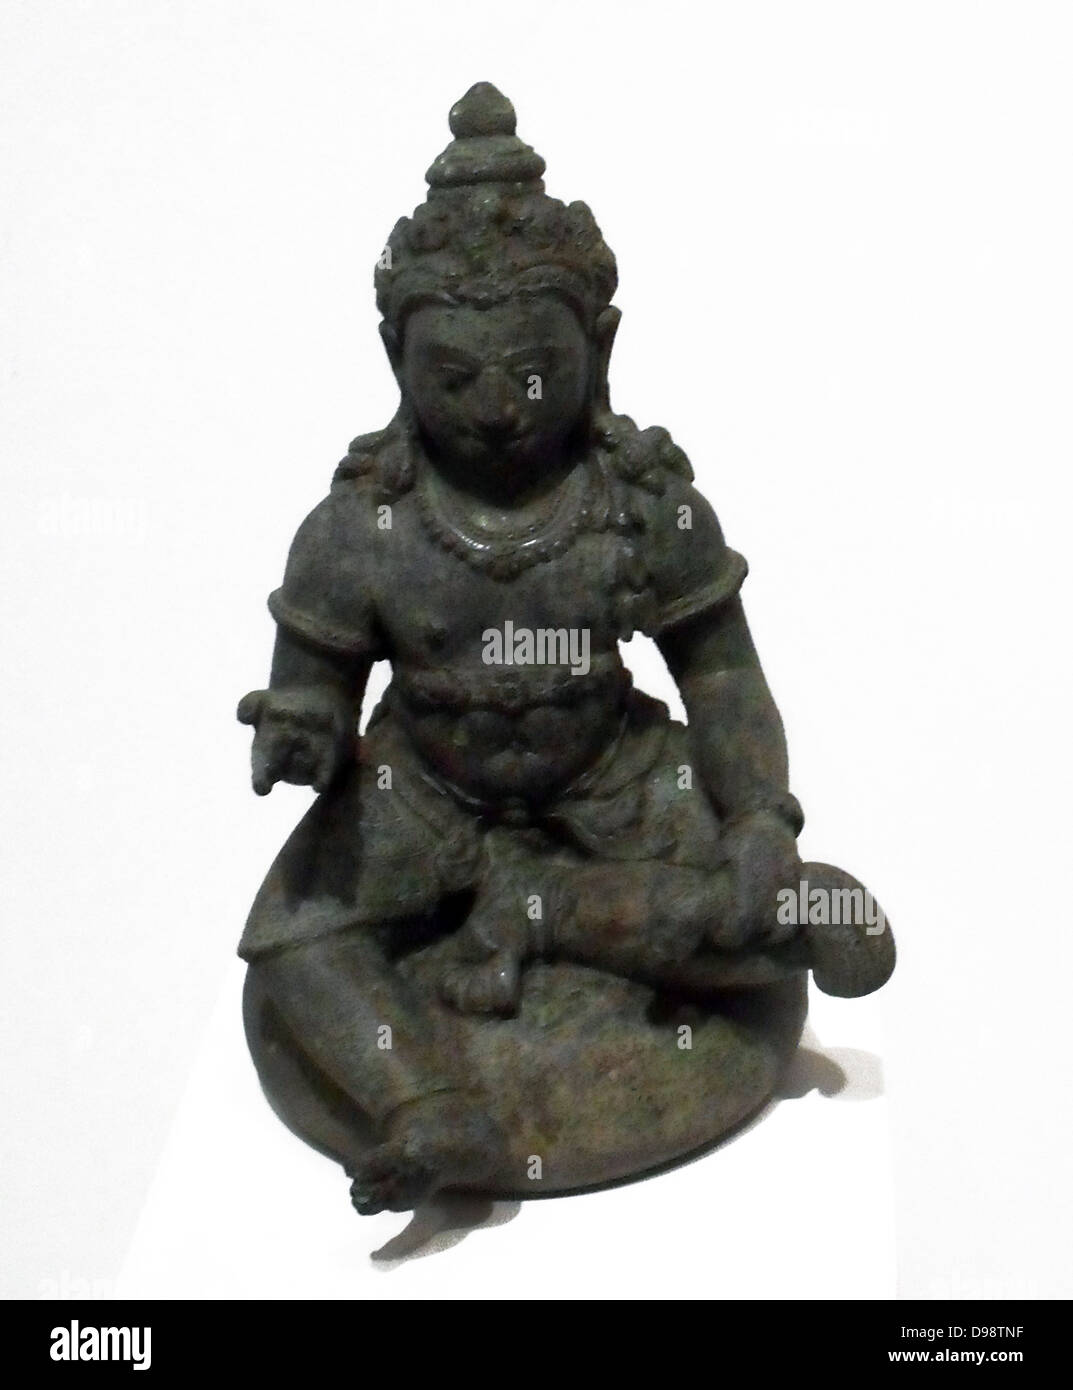 Figurine Darstellung Jambhala der Reichtum - die Form von avalokitesvara oder Chenrezig, der Bodhisattva des Mitgefühls. Jahrhundert, bronze, Skulptur von Central Java in Indonesien. Stockfoto